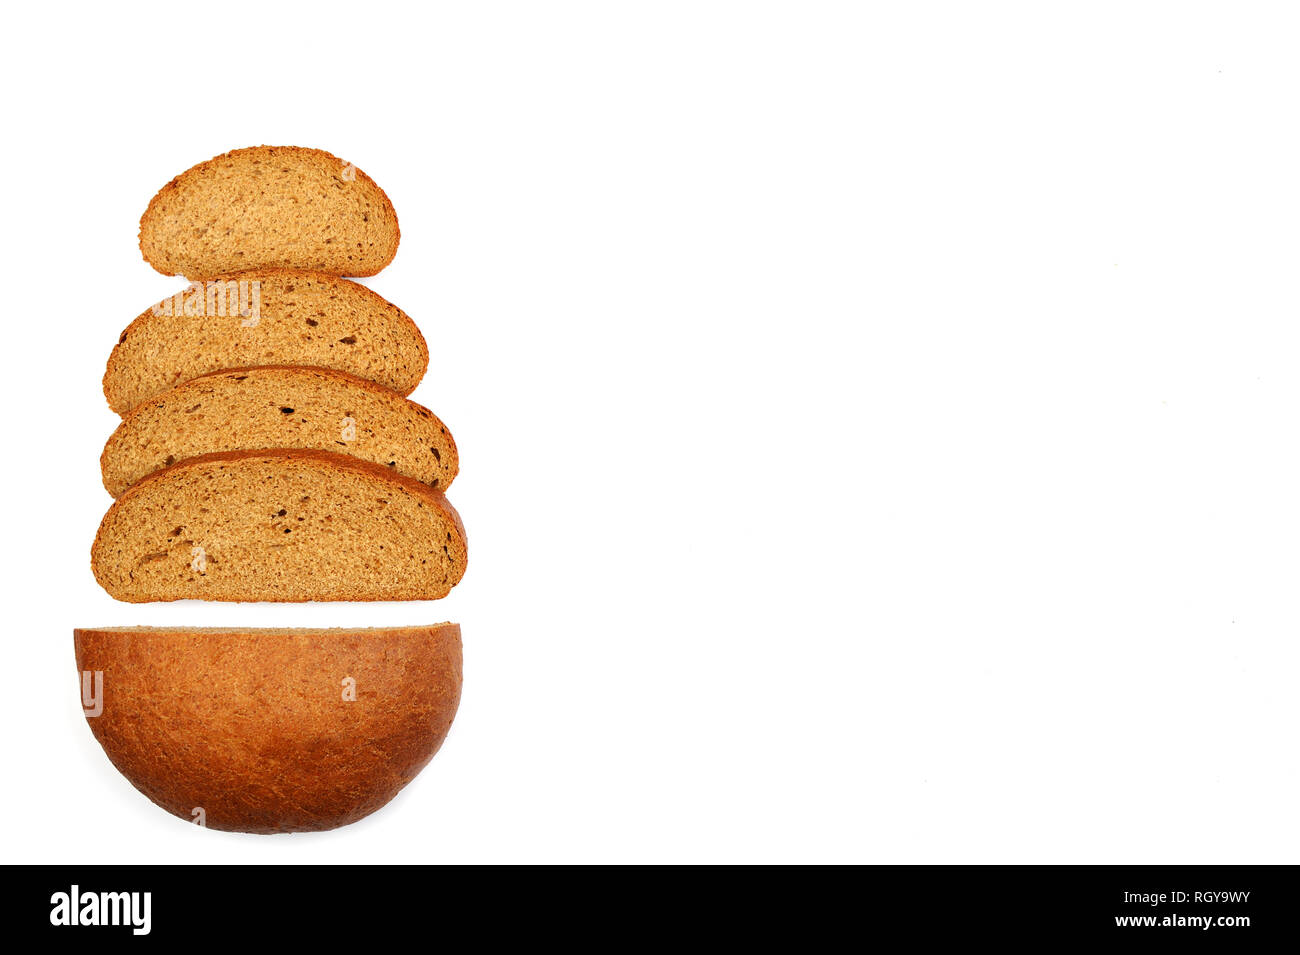 Image de tranches de pain de seigle rond avec de l'espace pour le texte. Le pain fait avec de la farine de seigle .Il contient une grande quantité de fibres et d'une petite quantité de graisse. Vue d'en haut Banque D'Images